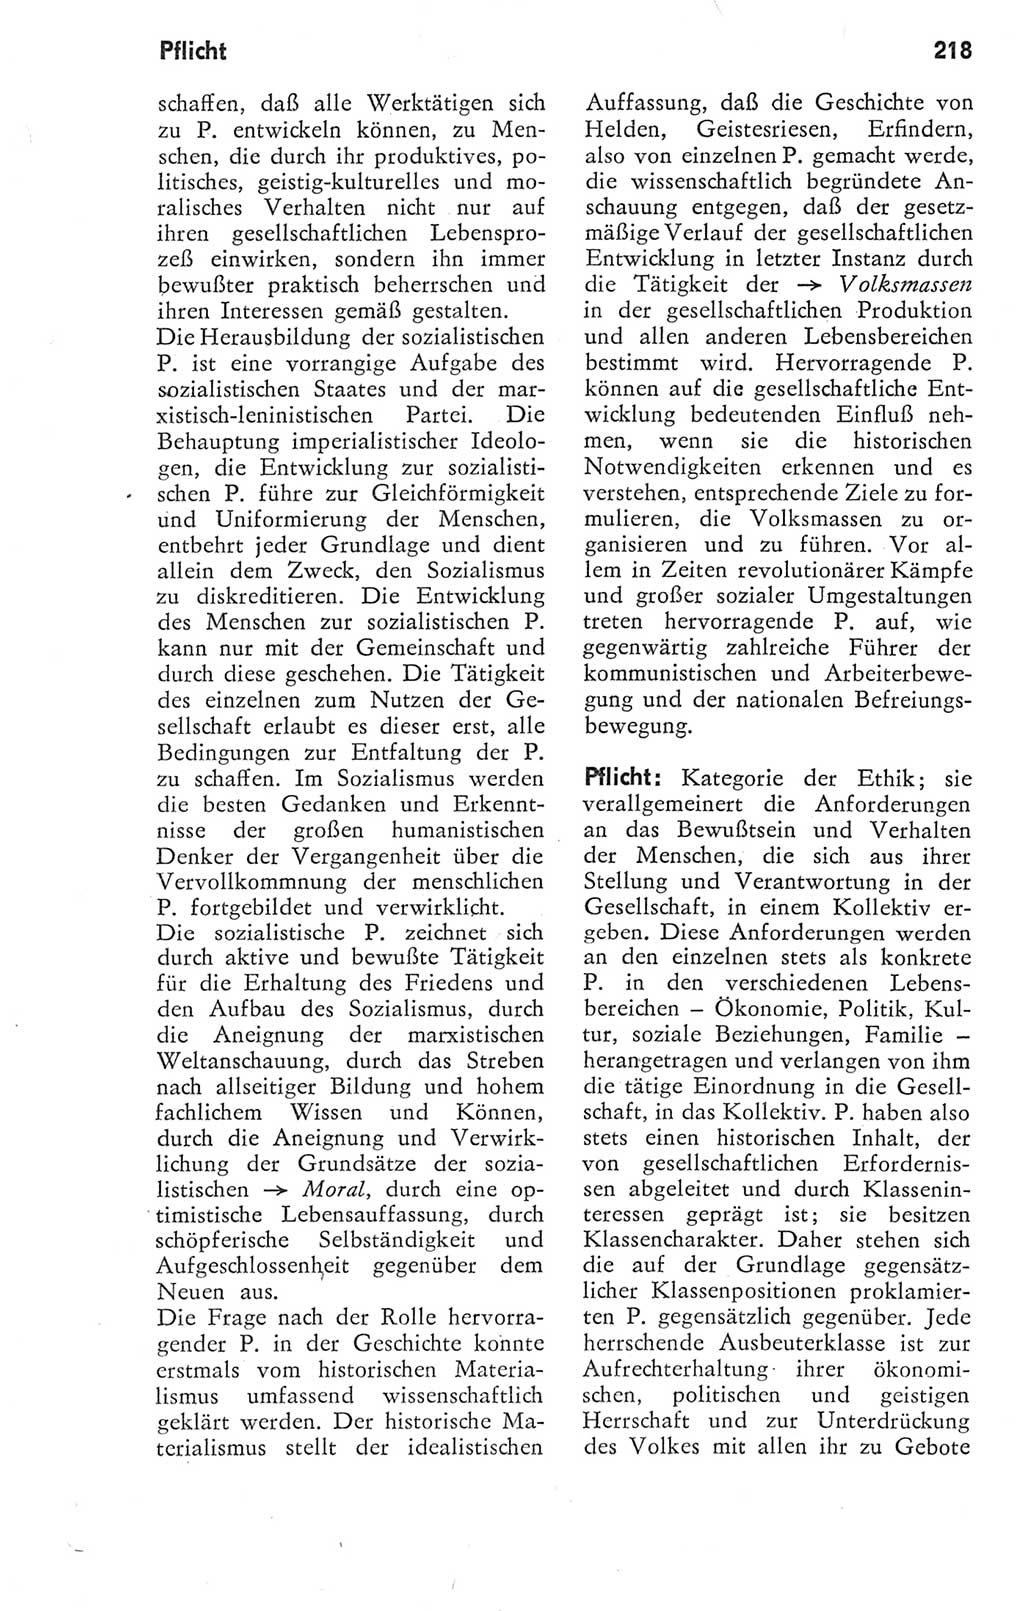 Kleines Wörterbuch der marxistisch-leninistischen Philosophie [Deutsche Demokratische Republik (DDR)] 1974, Seite 218 (Kl. Wb. ML Phil. DDR 1974, S. 218)